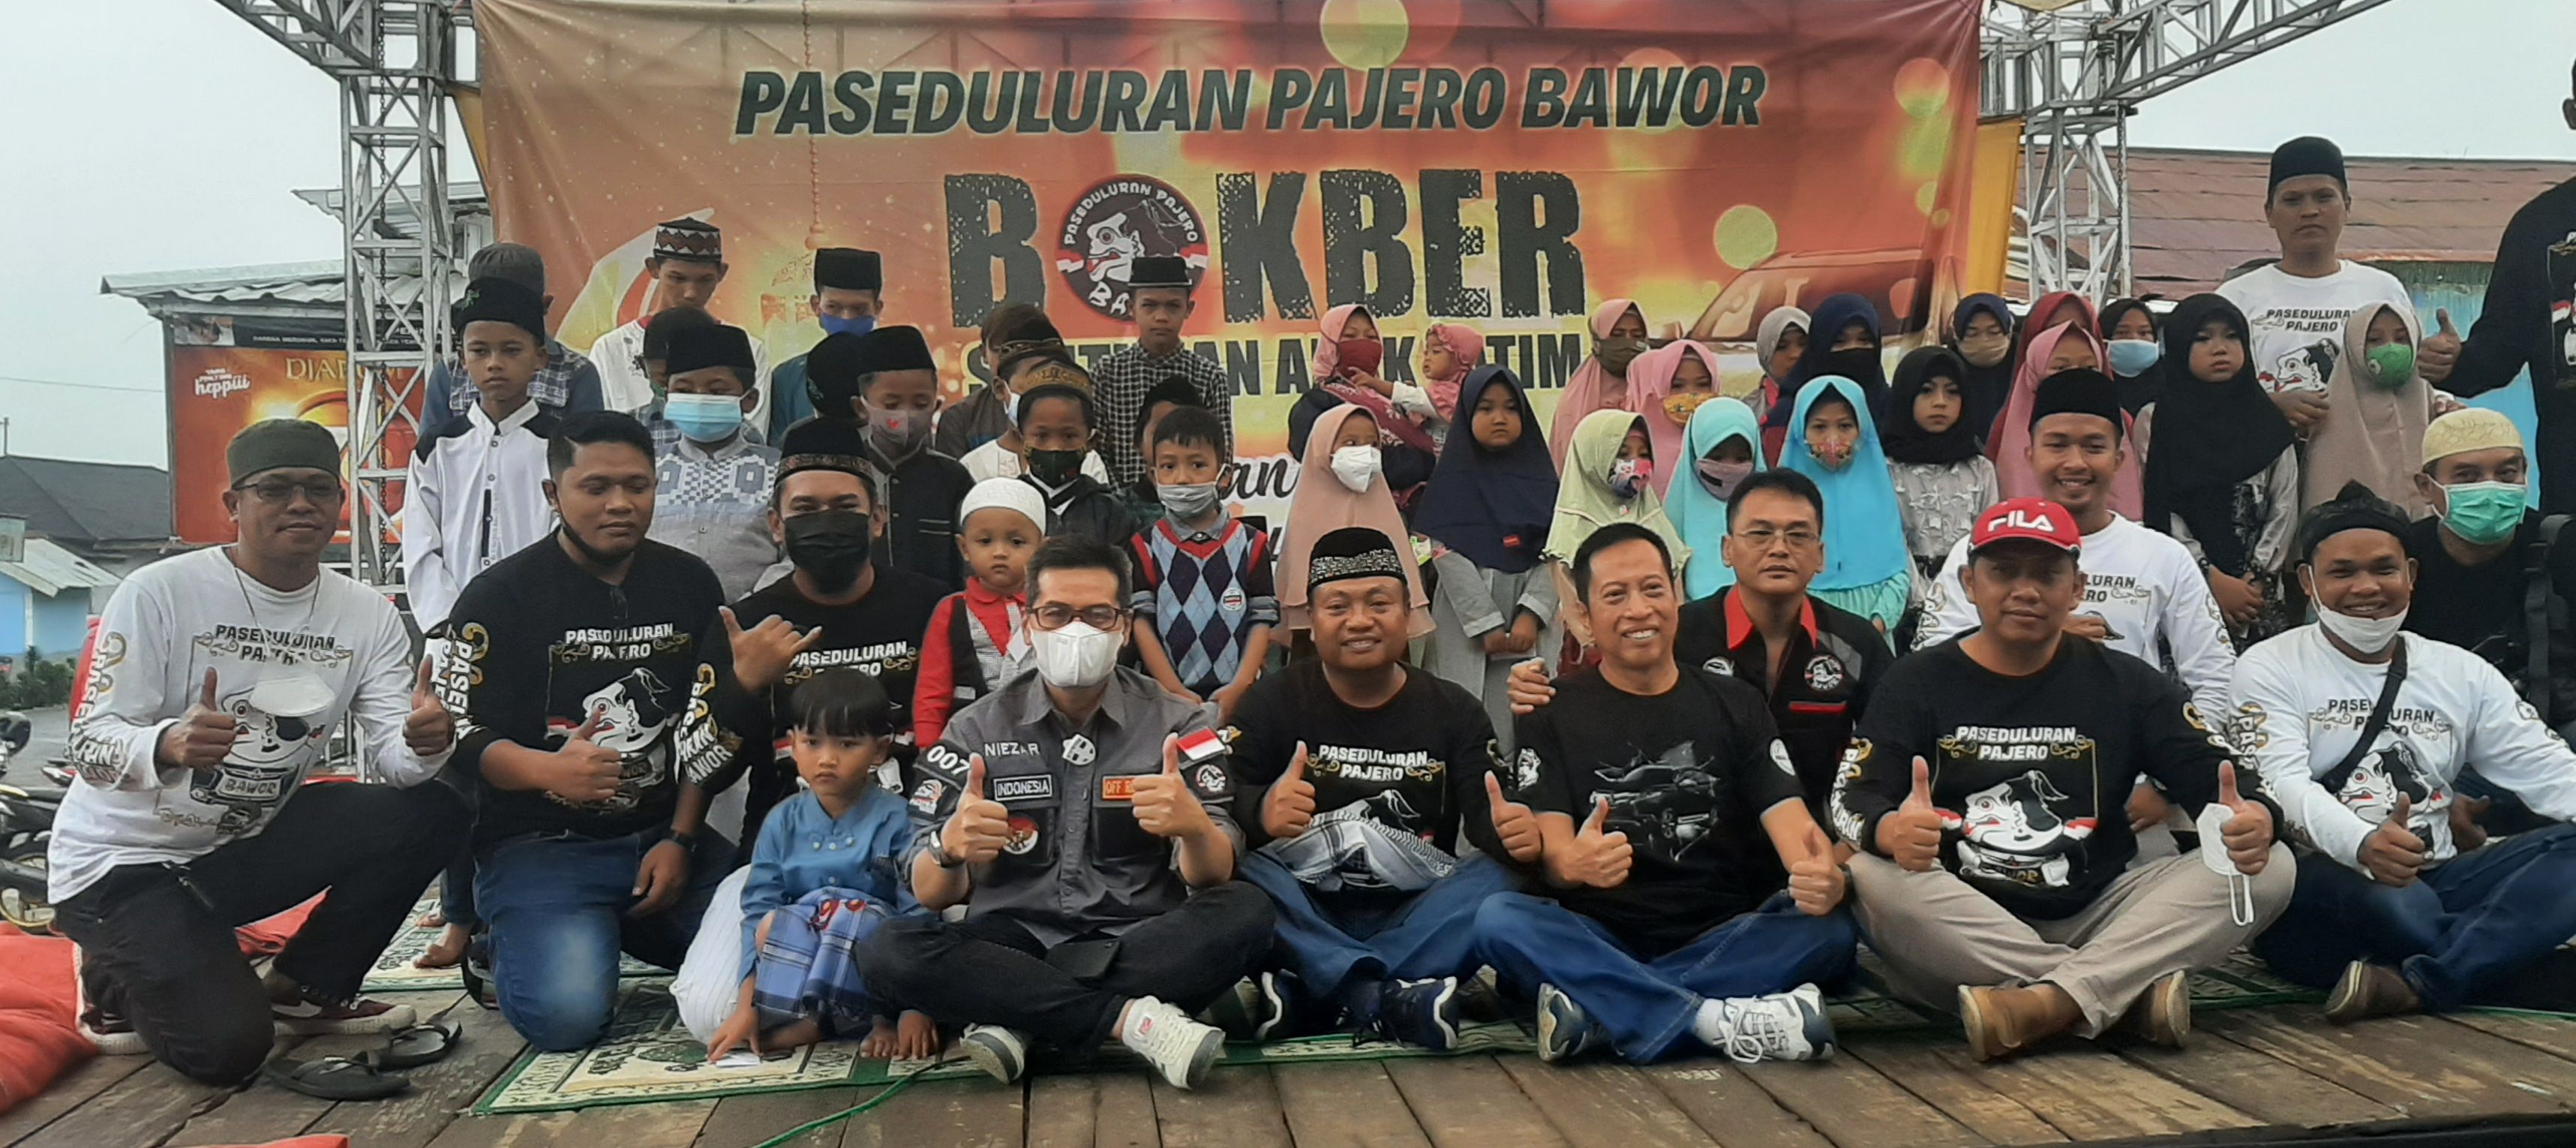 Paseduluran Pajero Bawor foto bersama dengan puluhan anak yatim.